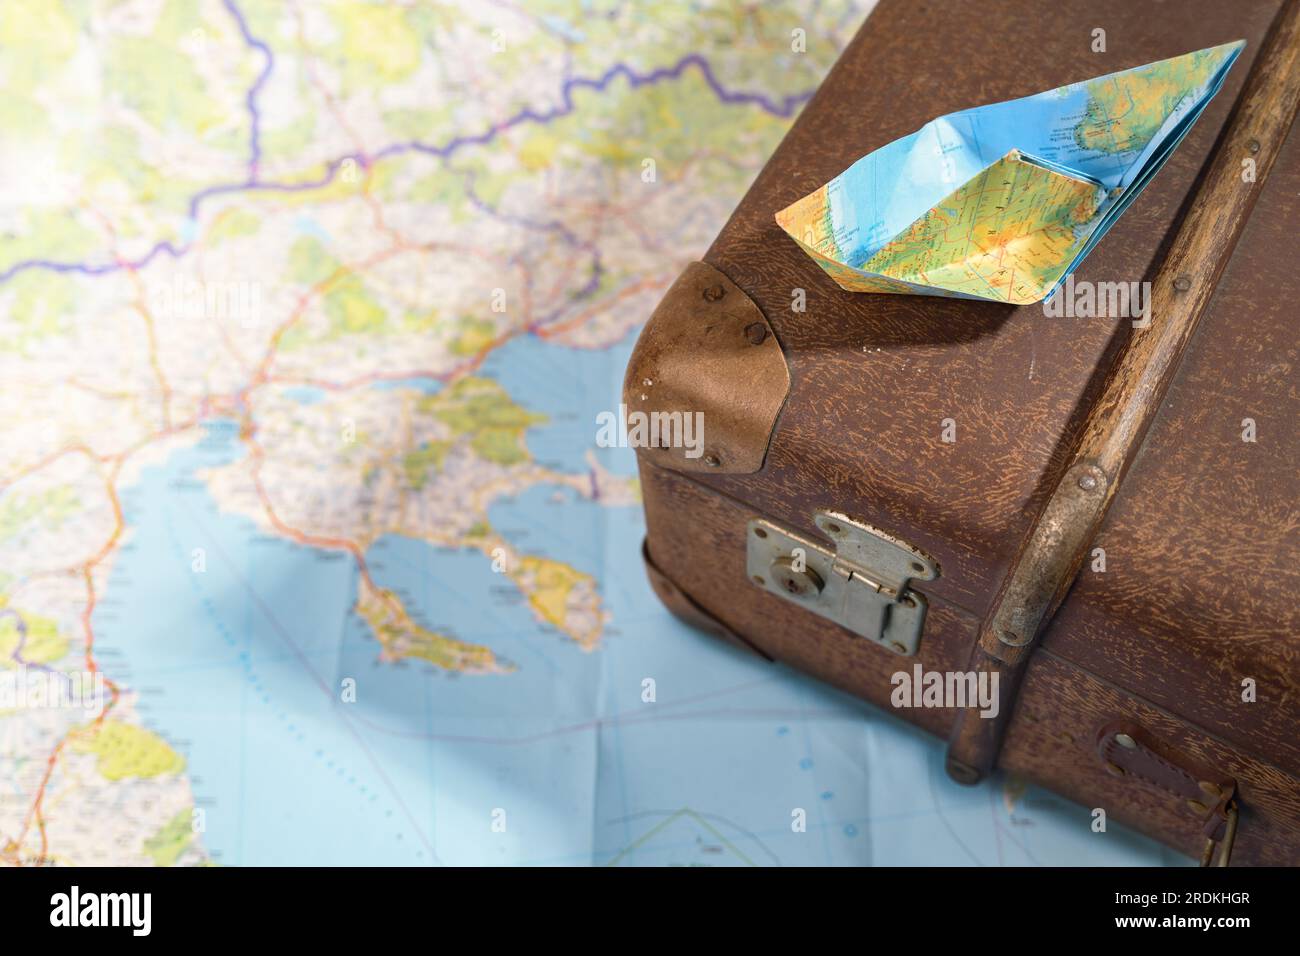 Gefaltetes Papierboot auf einem alten Koffer auf einer Karte, Reise-, Wanderlust- und Kreuzfahrtkonzept, Kopierraum, ausgewählter Fokus, schmale Schärfentiefe Stockfoto